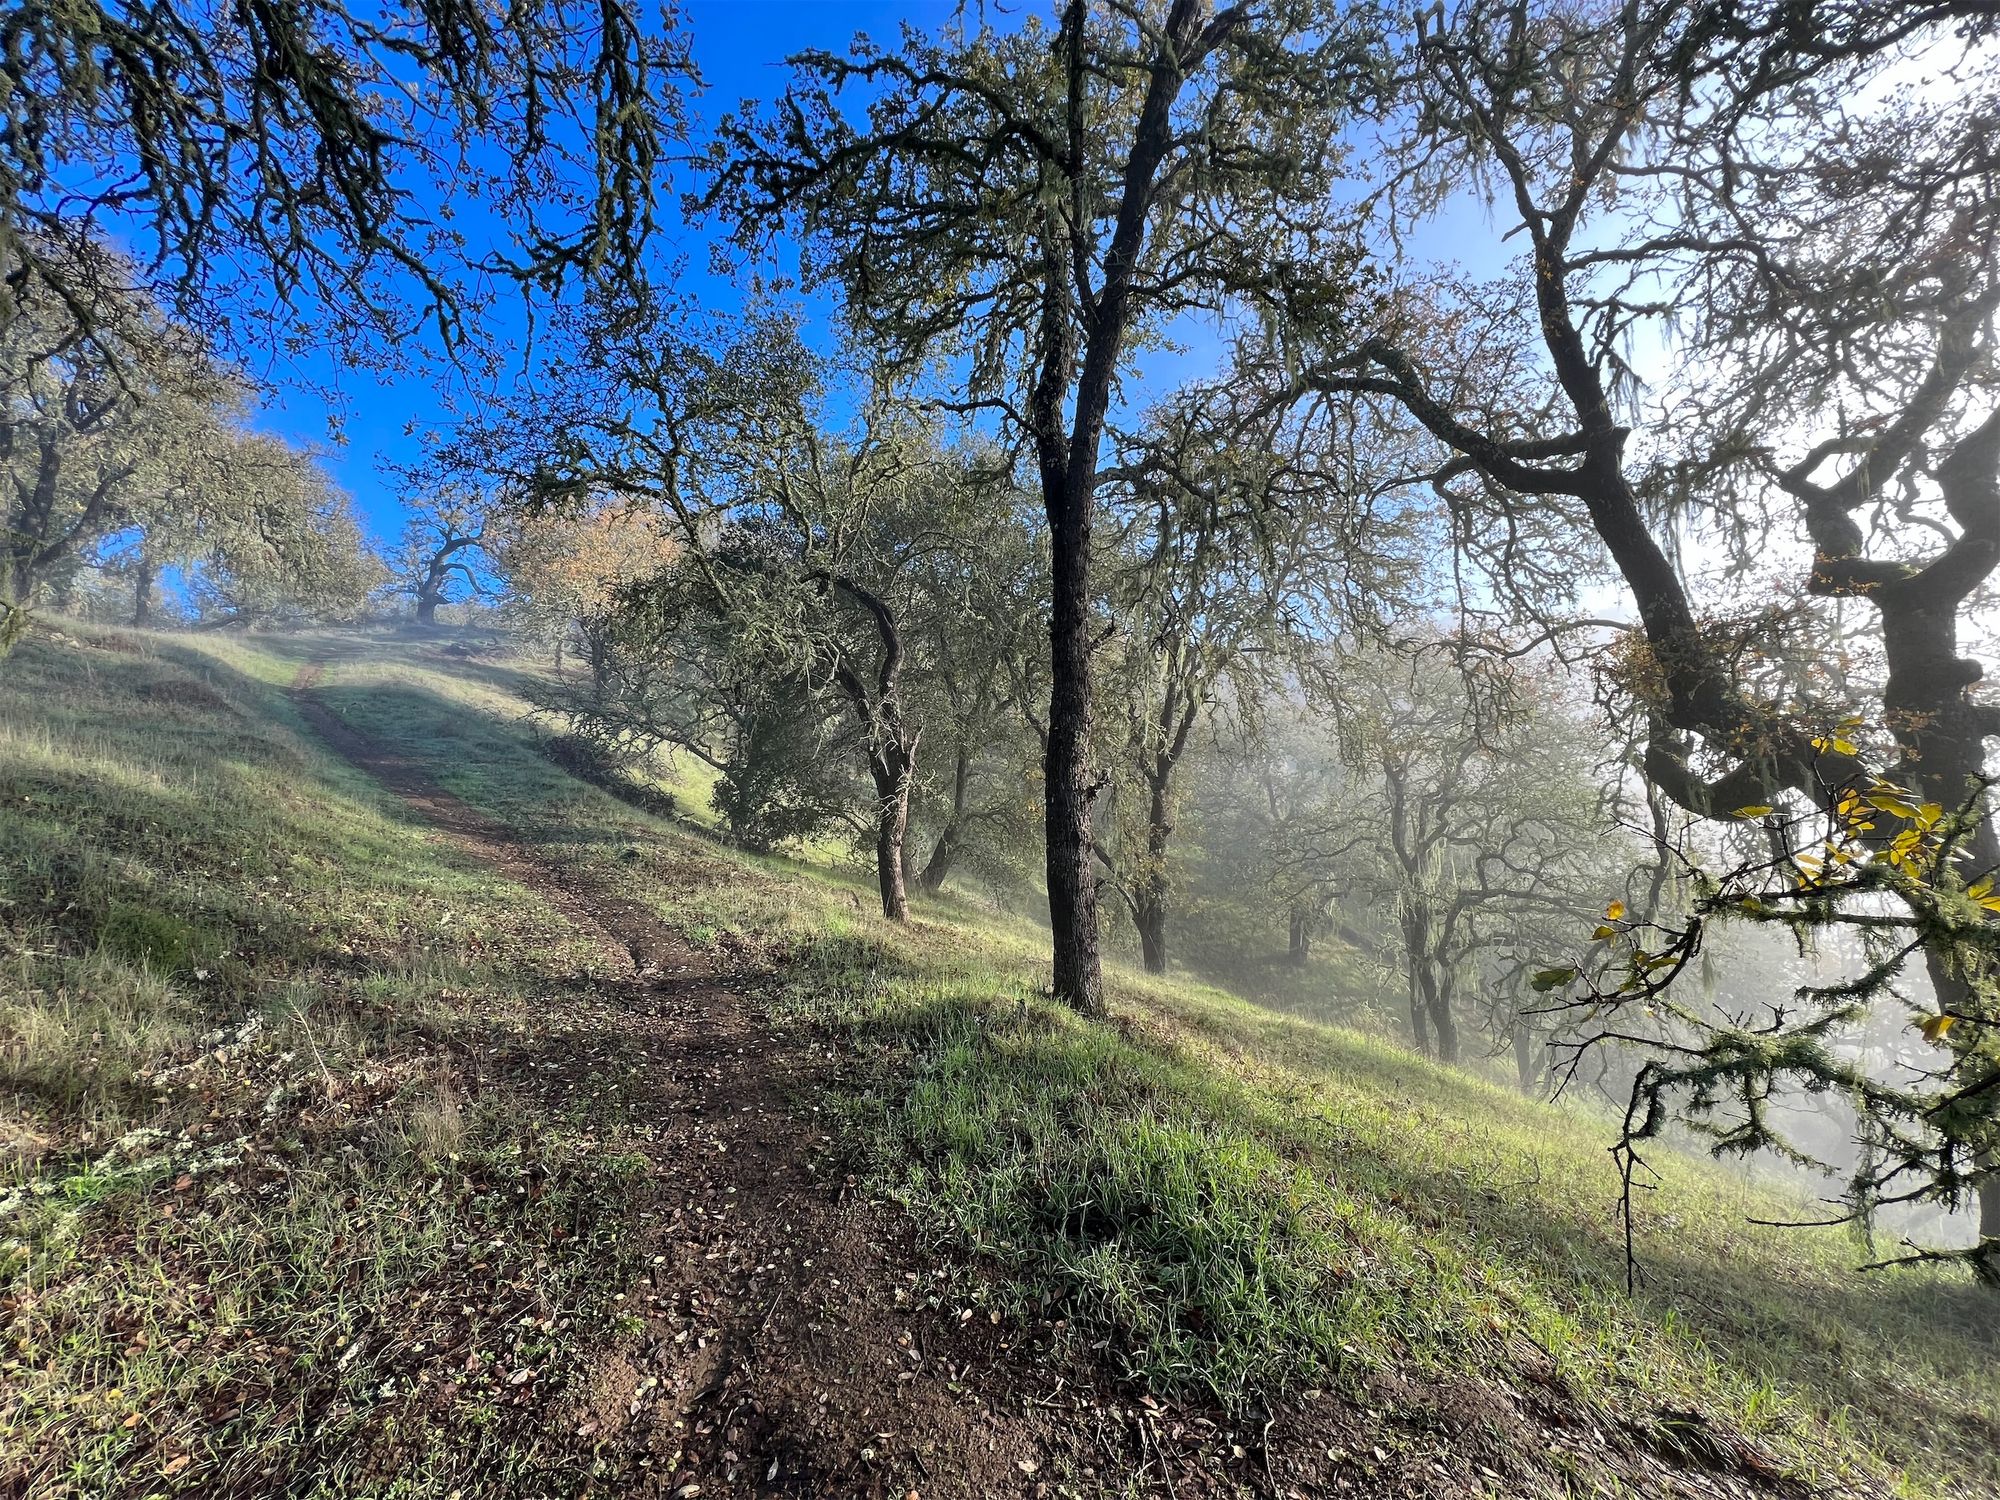 A steep trail through old oak trees.